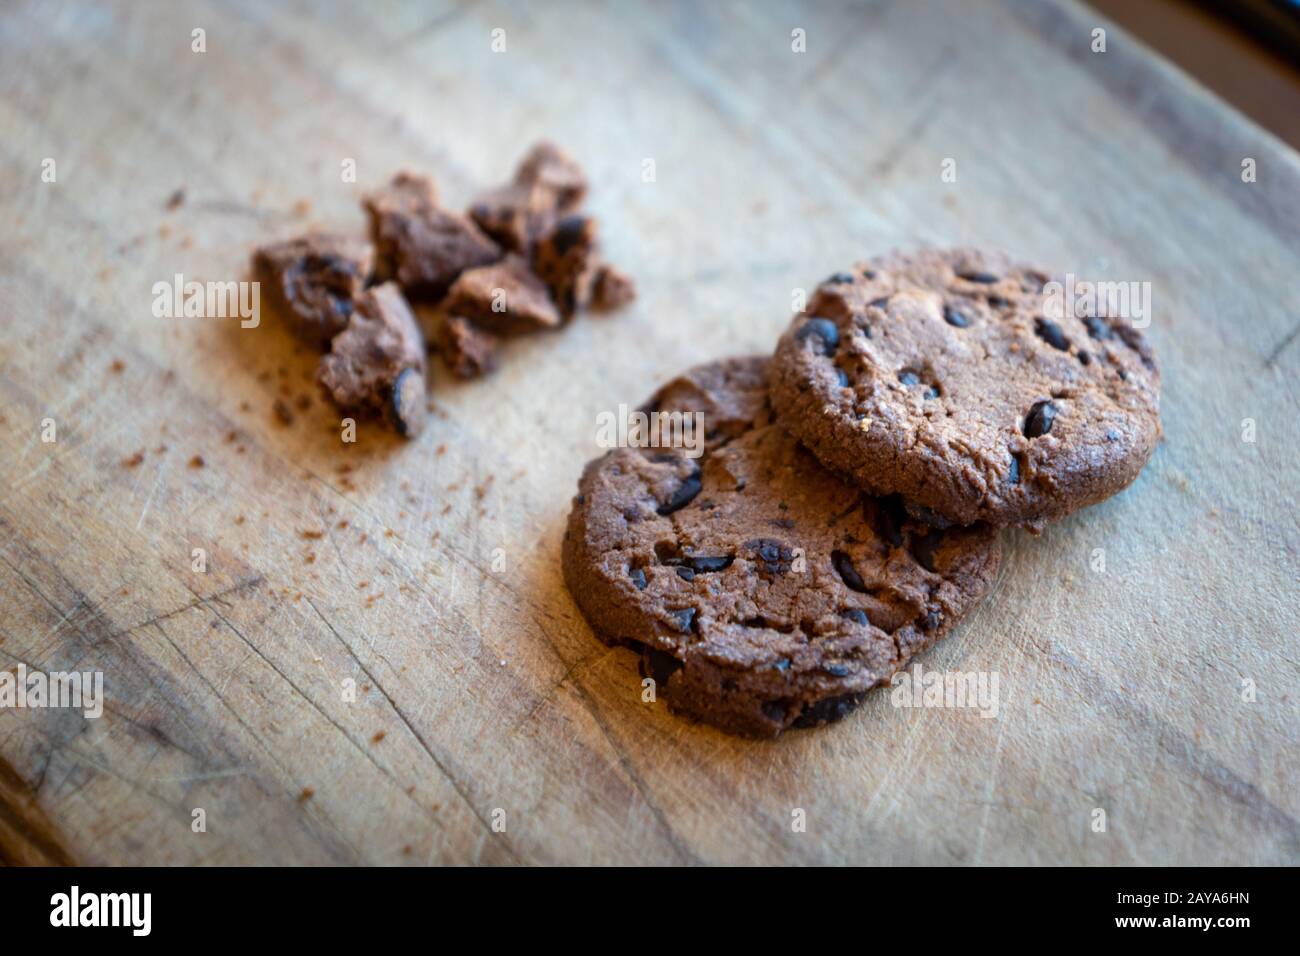 Kaputte Schokoladen-Chip-Plätzchen Kekse zerbrochen mit Krümel - Konzeptbild für Internetsicherheit und Datensicherheit Stockfoto